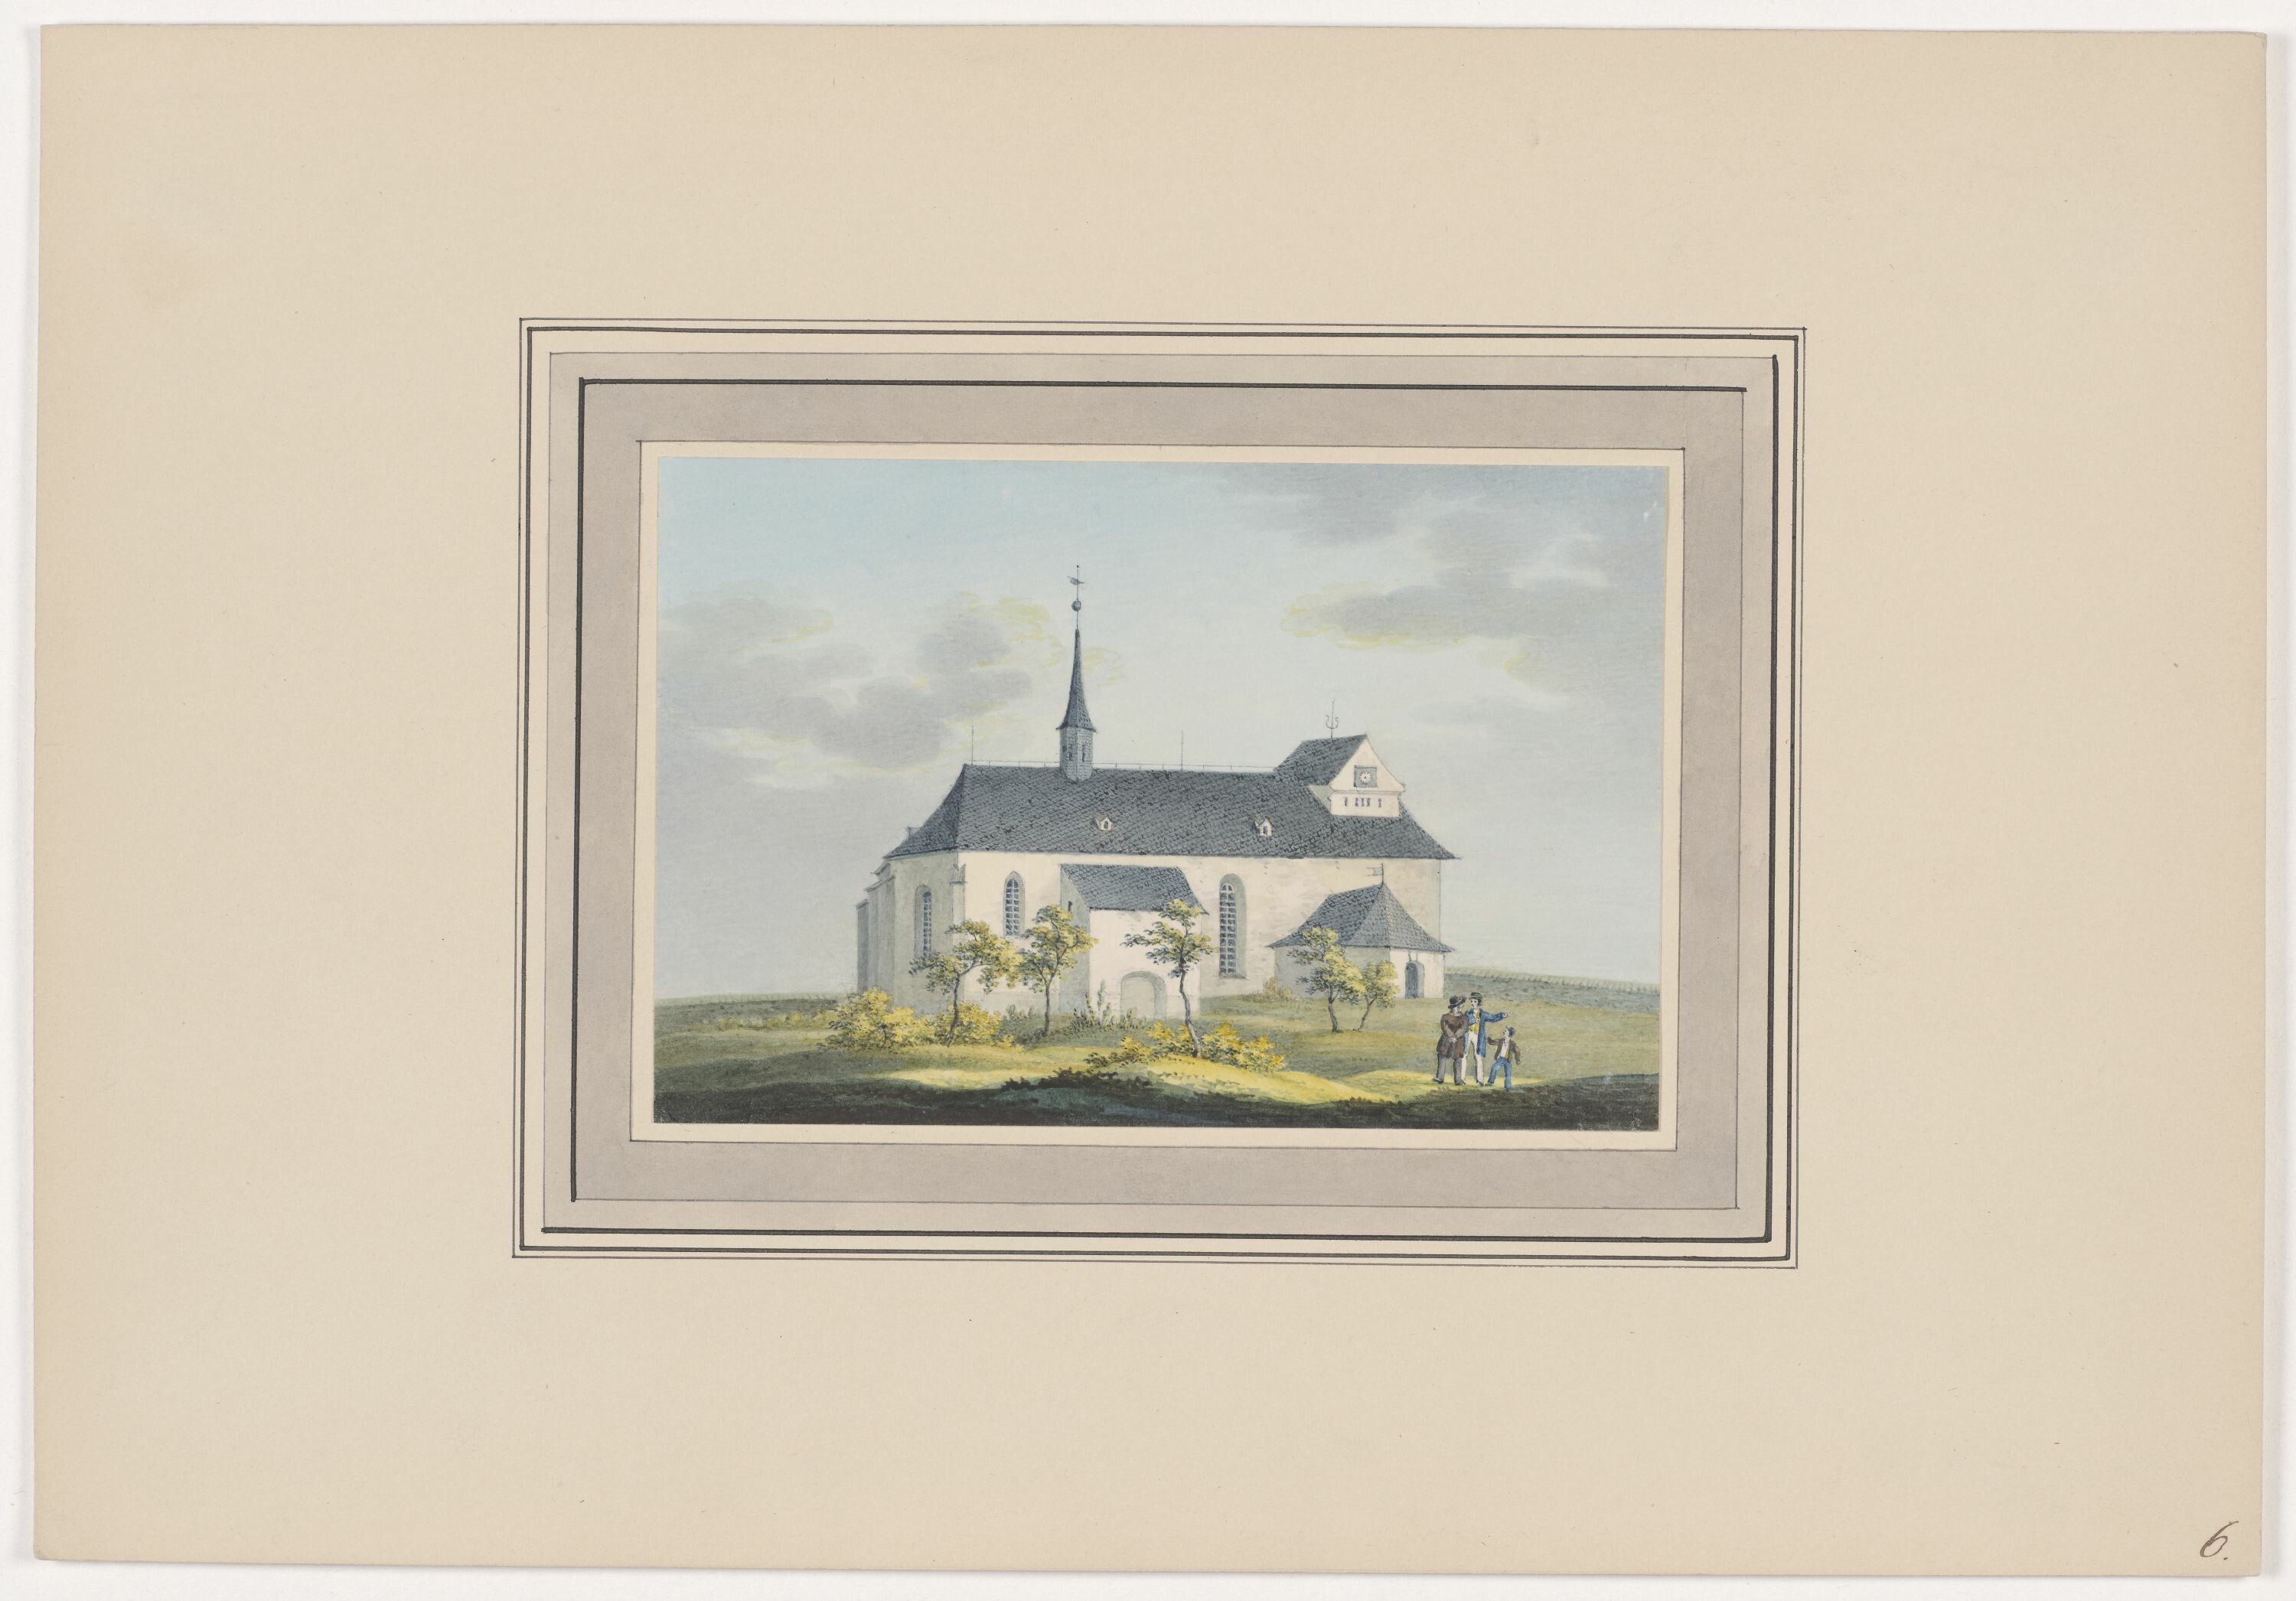 Kirche zu Hirschfeld, aus Mappe: Dorfkirchen der Ephorie Zwickau, Blatt 6 (KUNSTSAMMLUNGEN ZWICKAU Max-Pechstein-Museum RR-F)